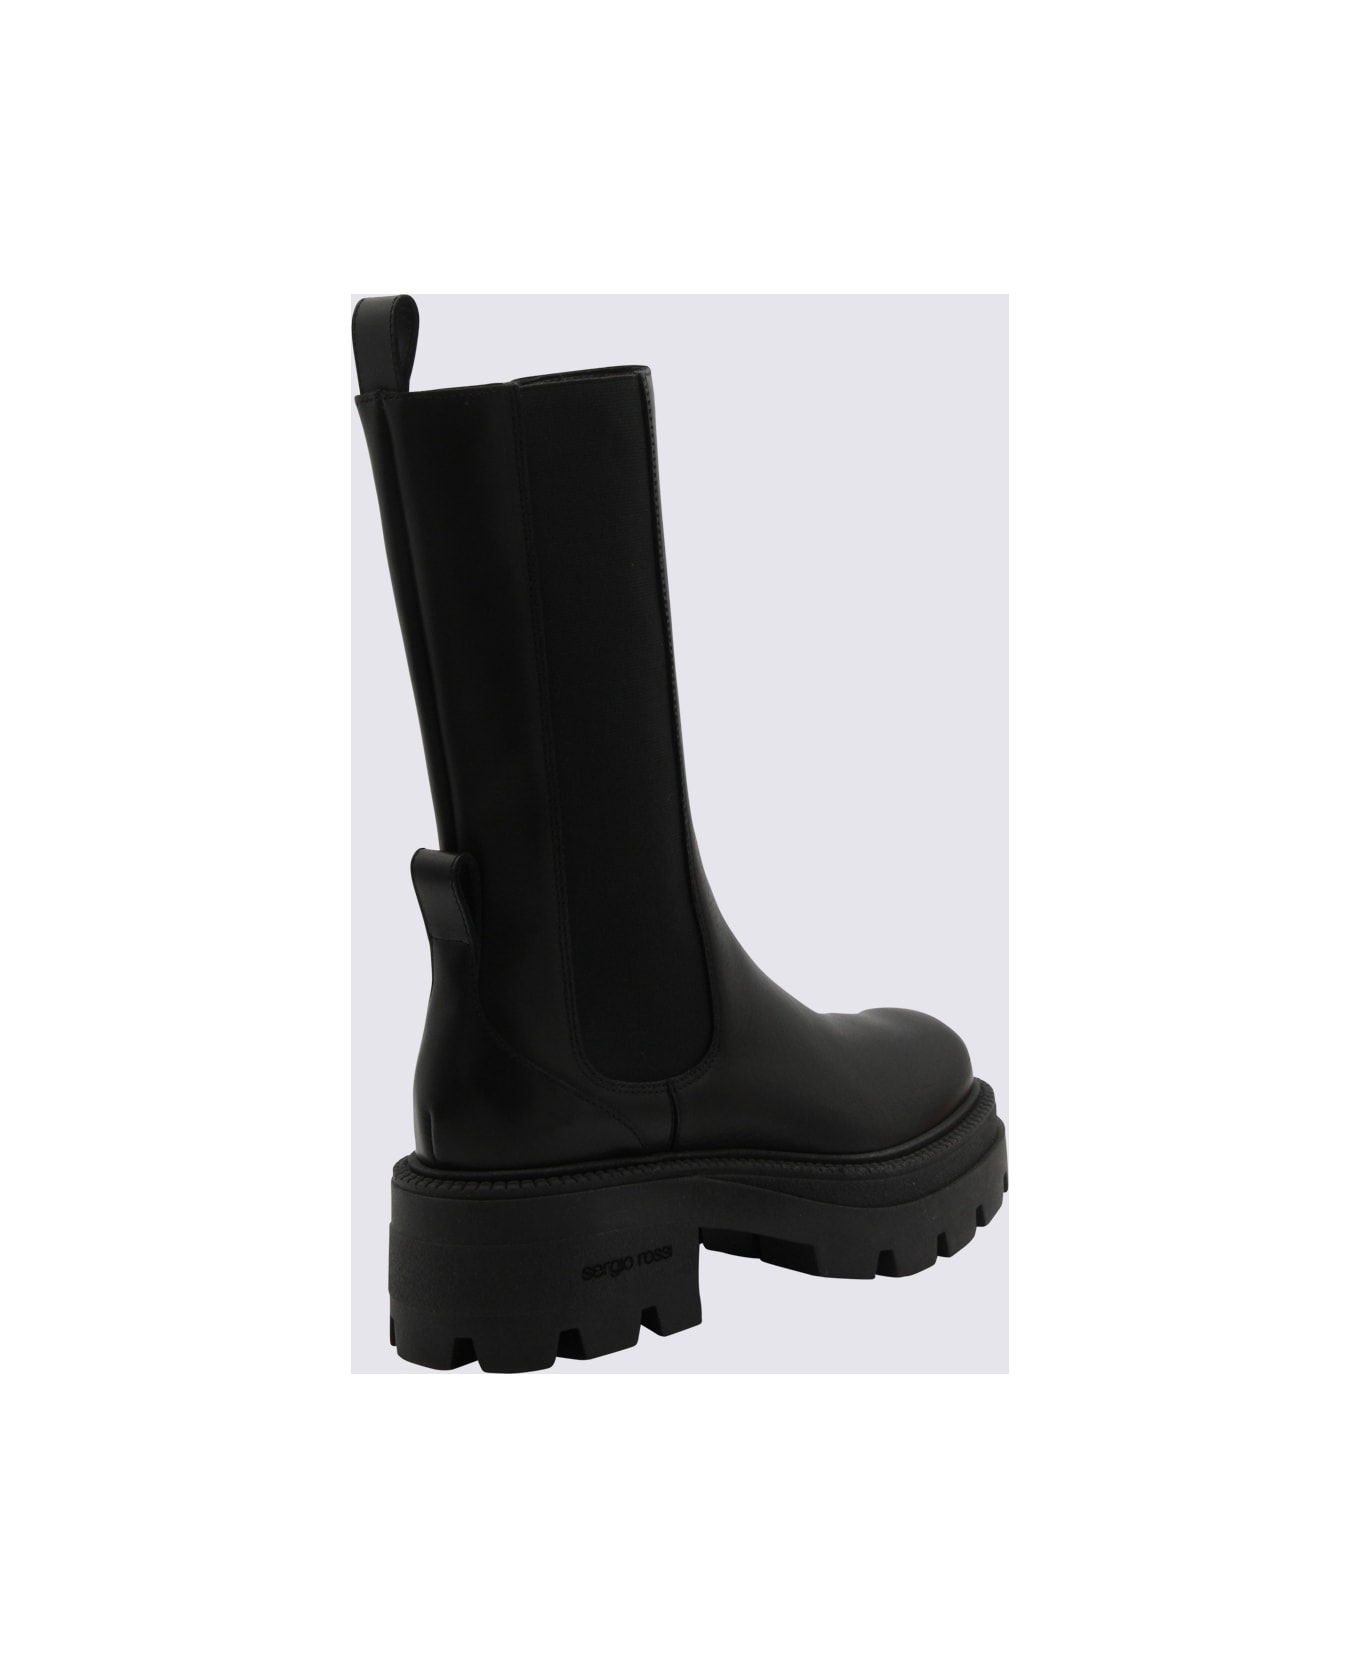 Sergio Rossi Black Leather Milla Boots - Black ブーツ